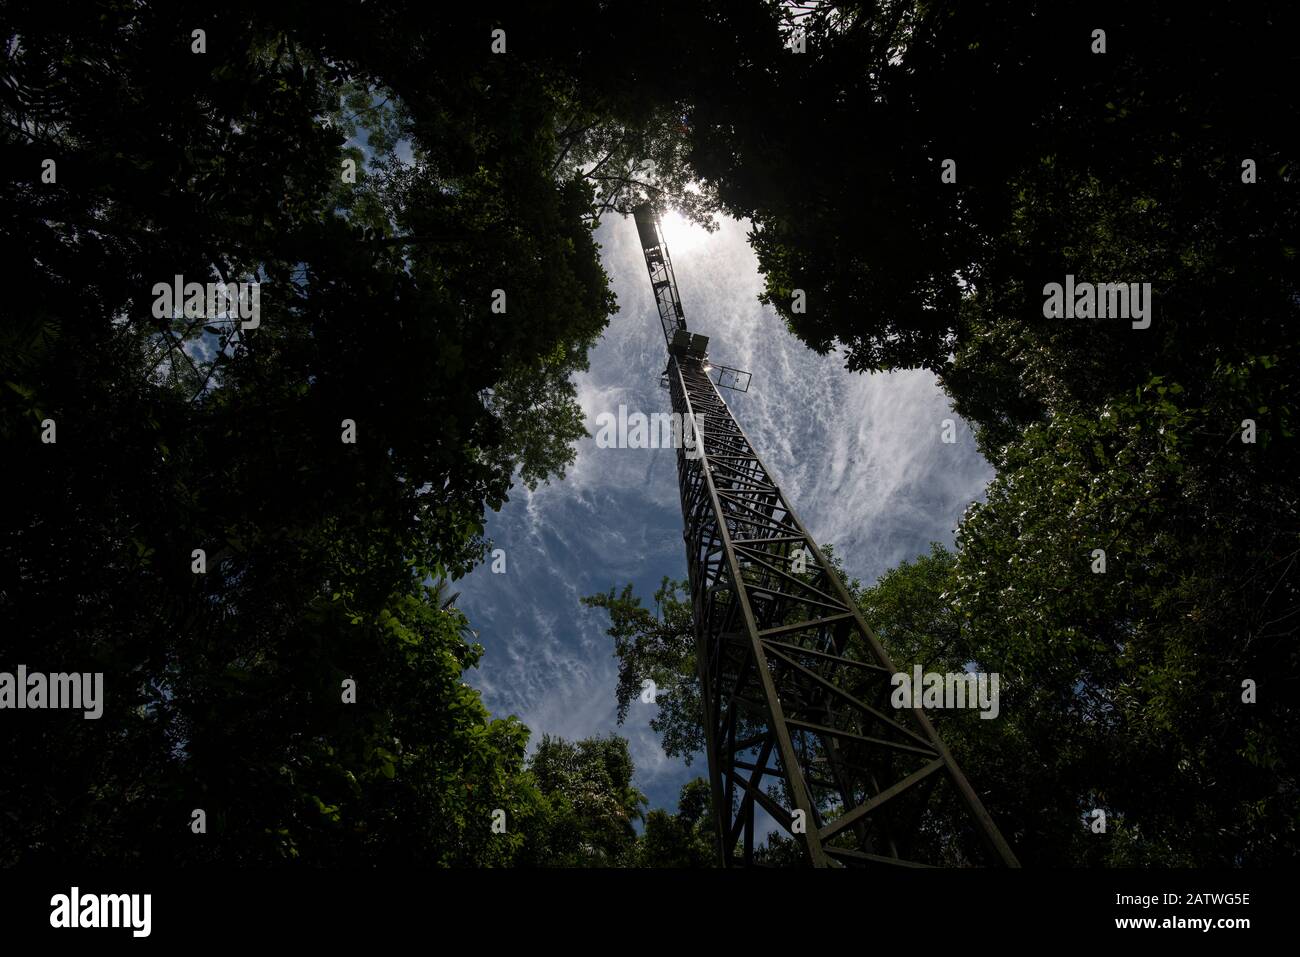 Niedriger Winkel des Krans, der für die Untersuchung des Baumdachs am Daintree Rainforest Observatory in Queensland, Australien verwendet wird. Februar 2015 Stockfoto